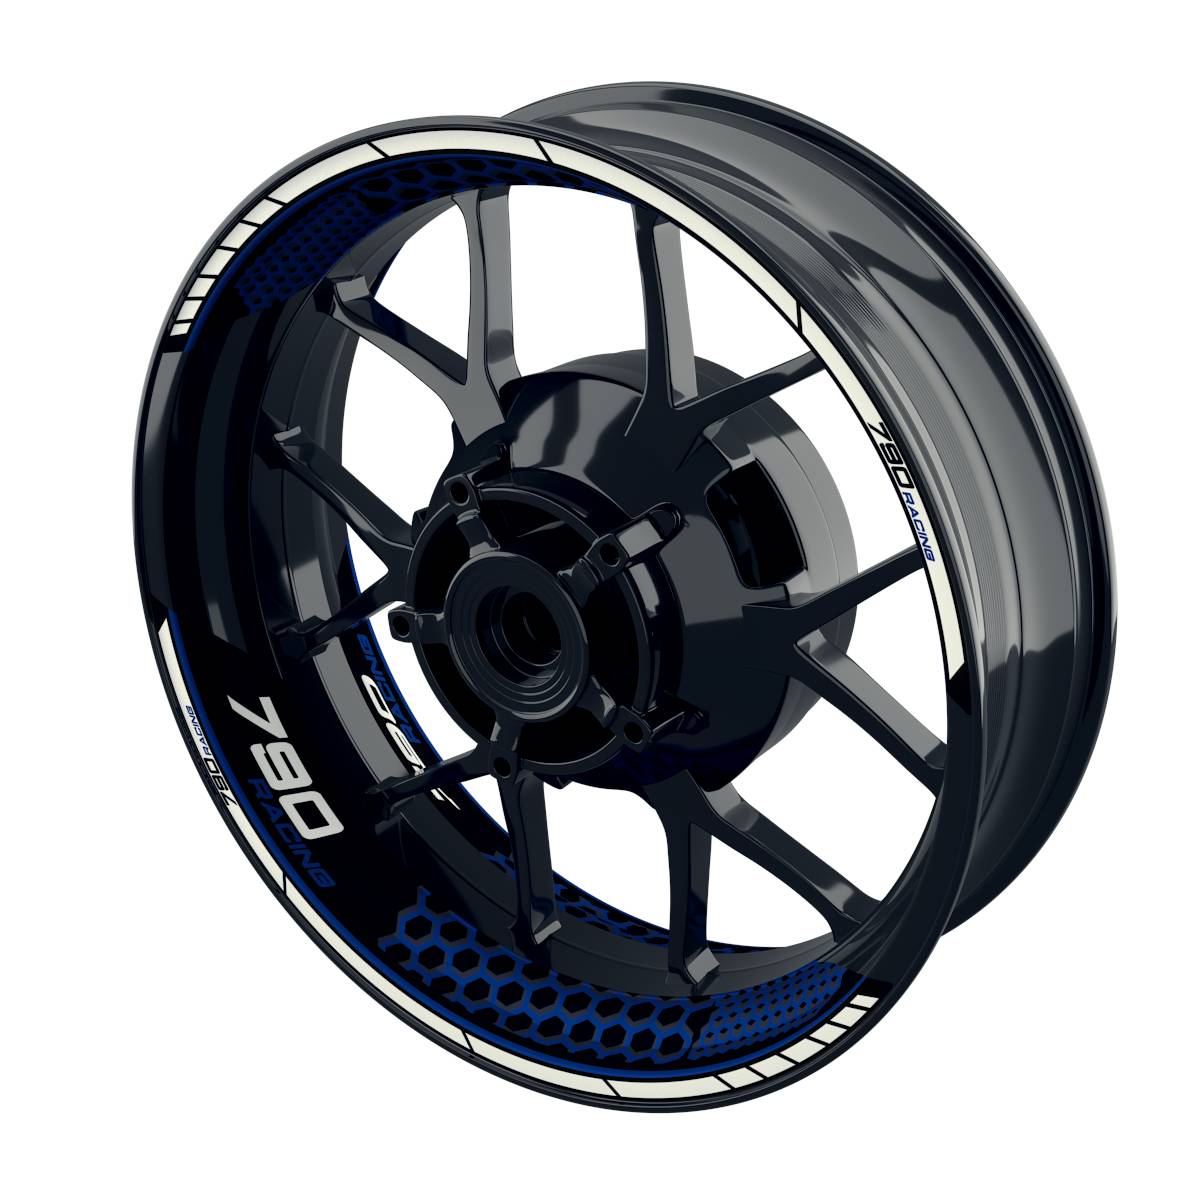 Racing 790 Hexagon Felgenaufkleber Wheelsticker Premium geteilt